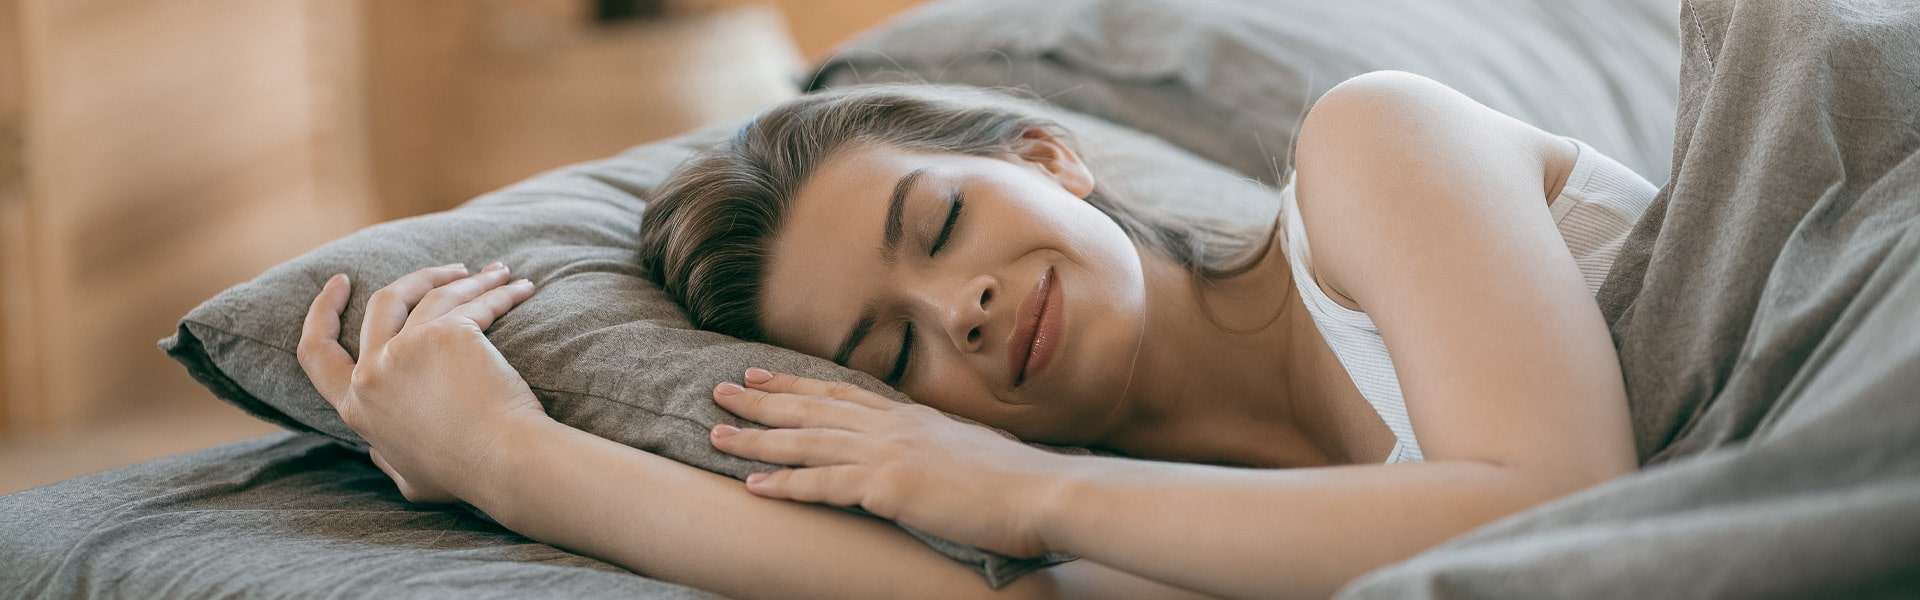 Mélatonine pour le sommeil | Fonctions, à quoi ça sert, effets secondaires